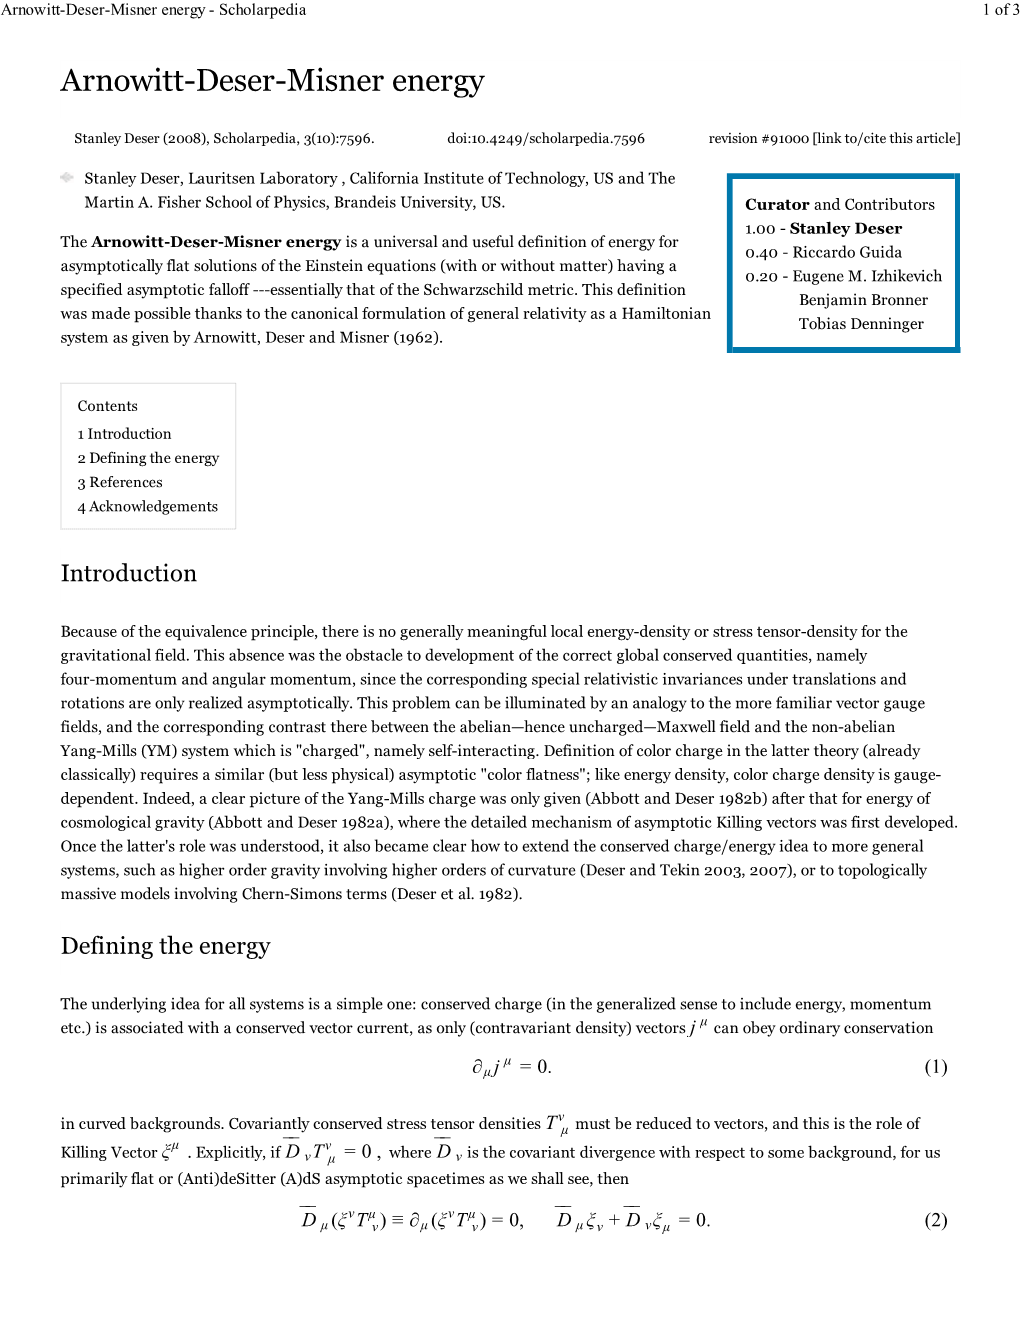 Arnowitt-Deser-Misner Energy - Scholarpedia 1 of 3